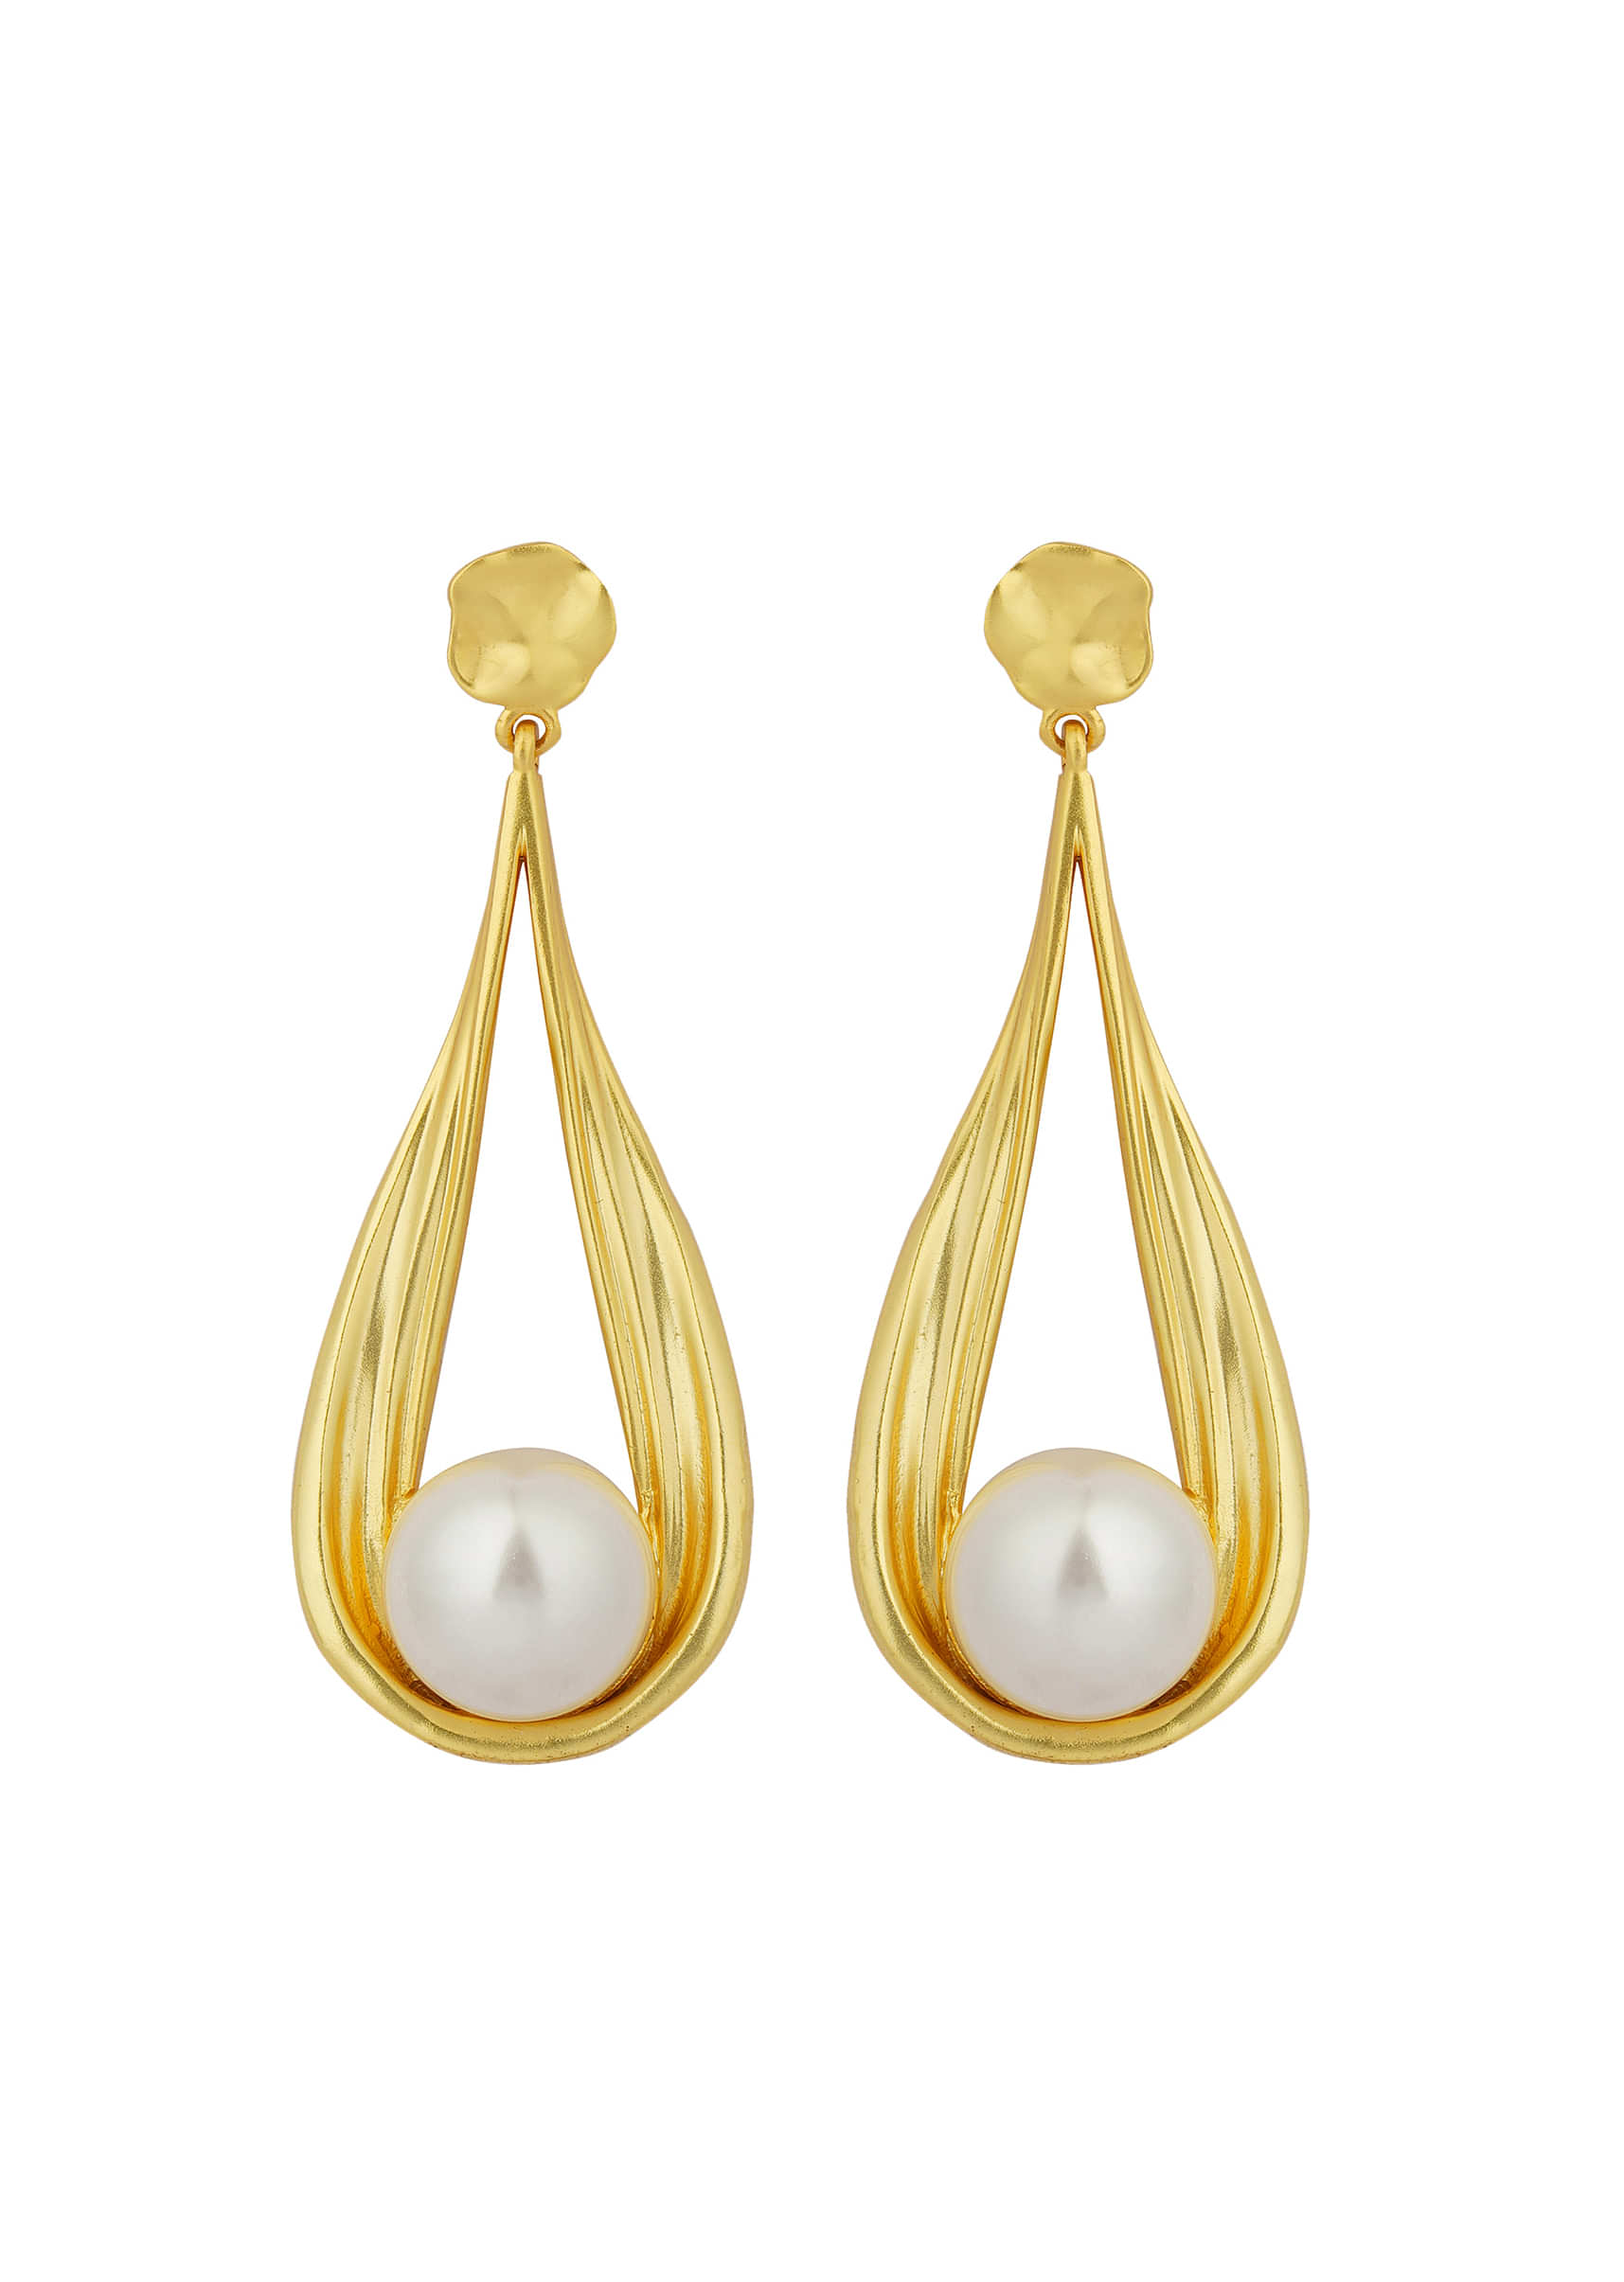 Gold 22K Dangler Earrings With White Shell Pearl